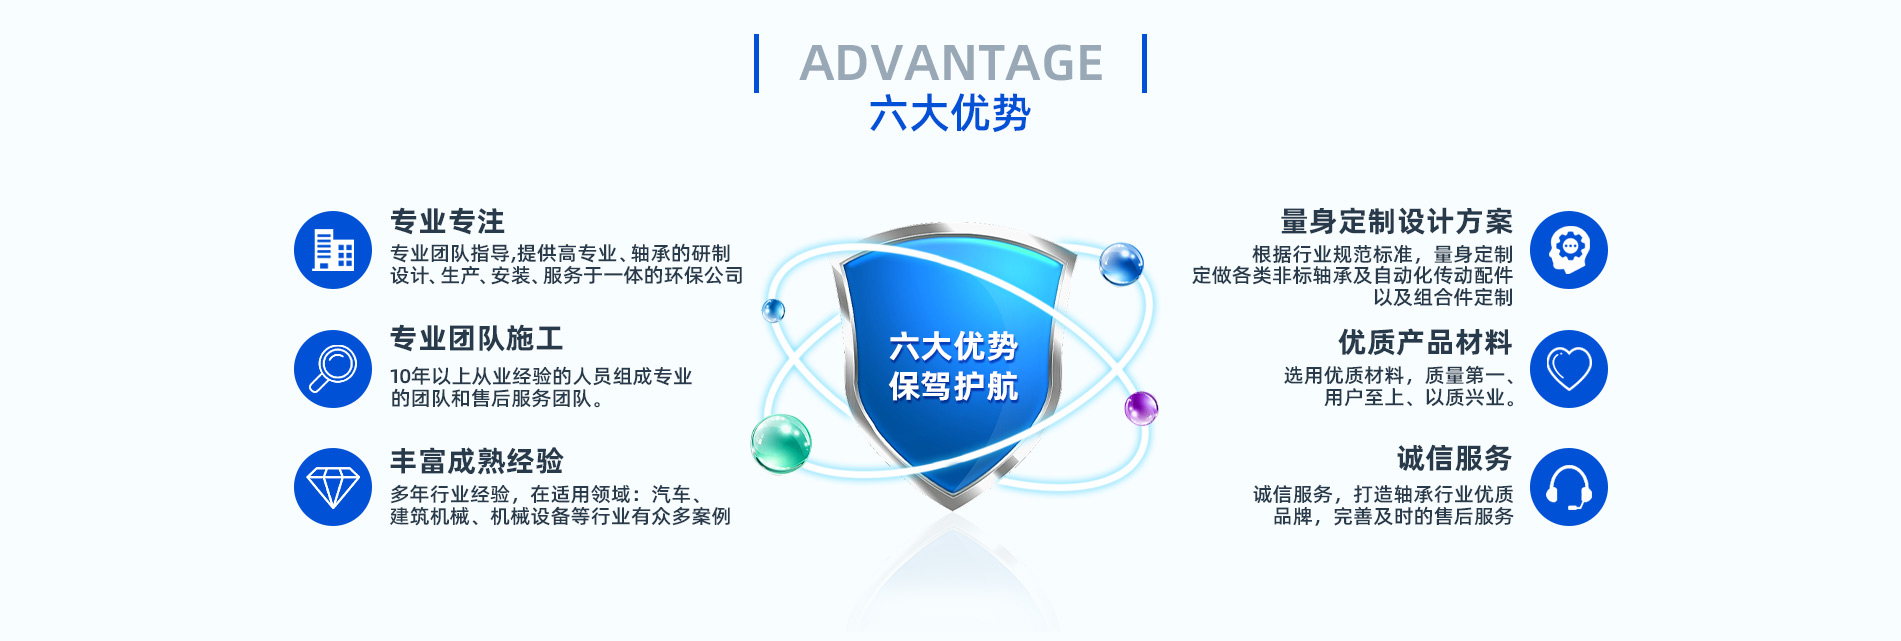 上海藍孚軸承制造有限公司-電腦版_12.jpg